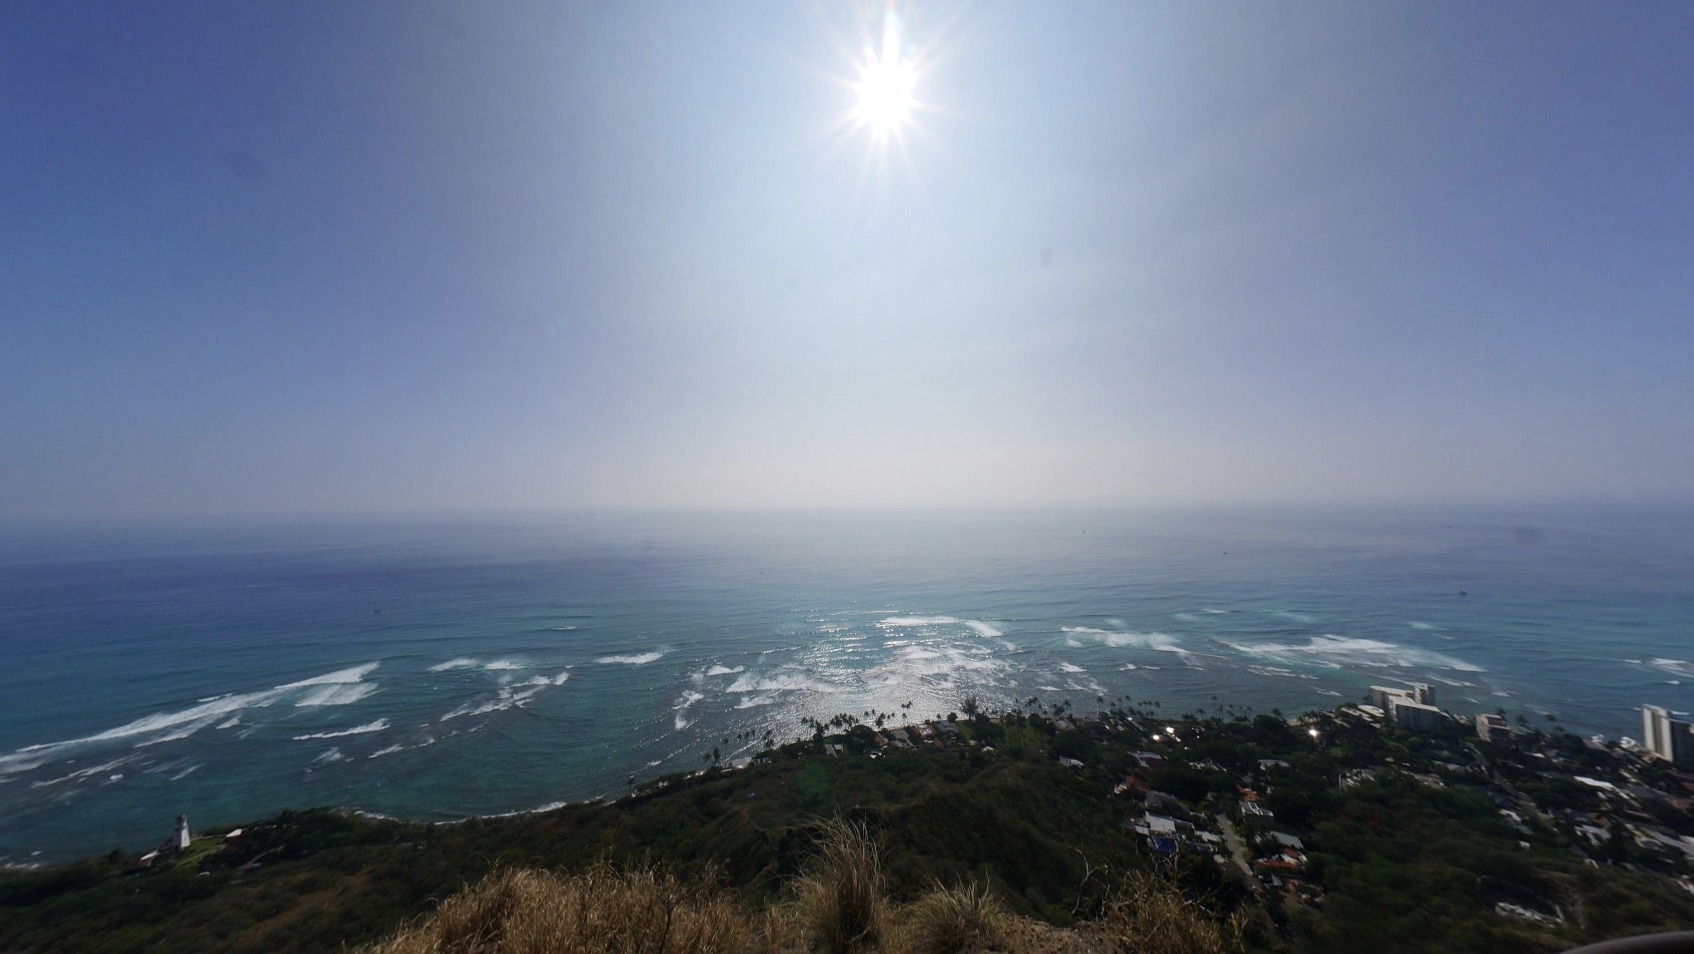 【カイルアビーチ ビューポイント@ハワイ】360°パノラマ撮影・制作実績詳細ページ